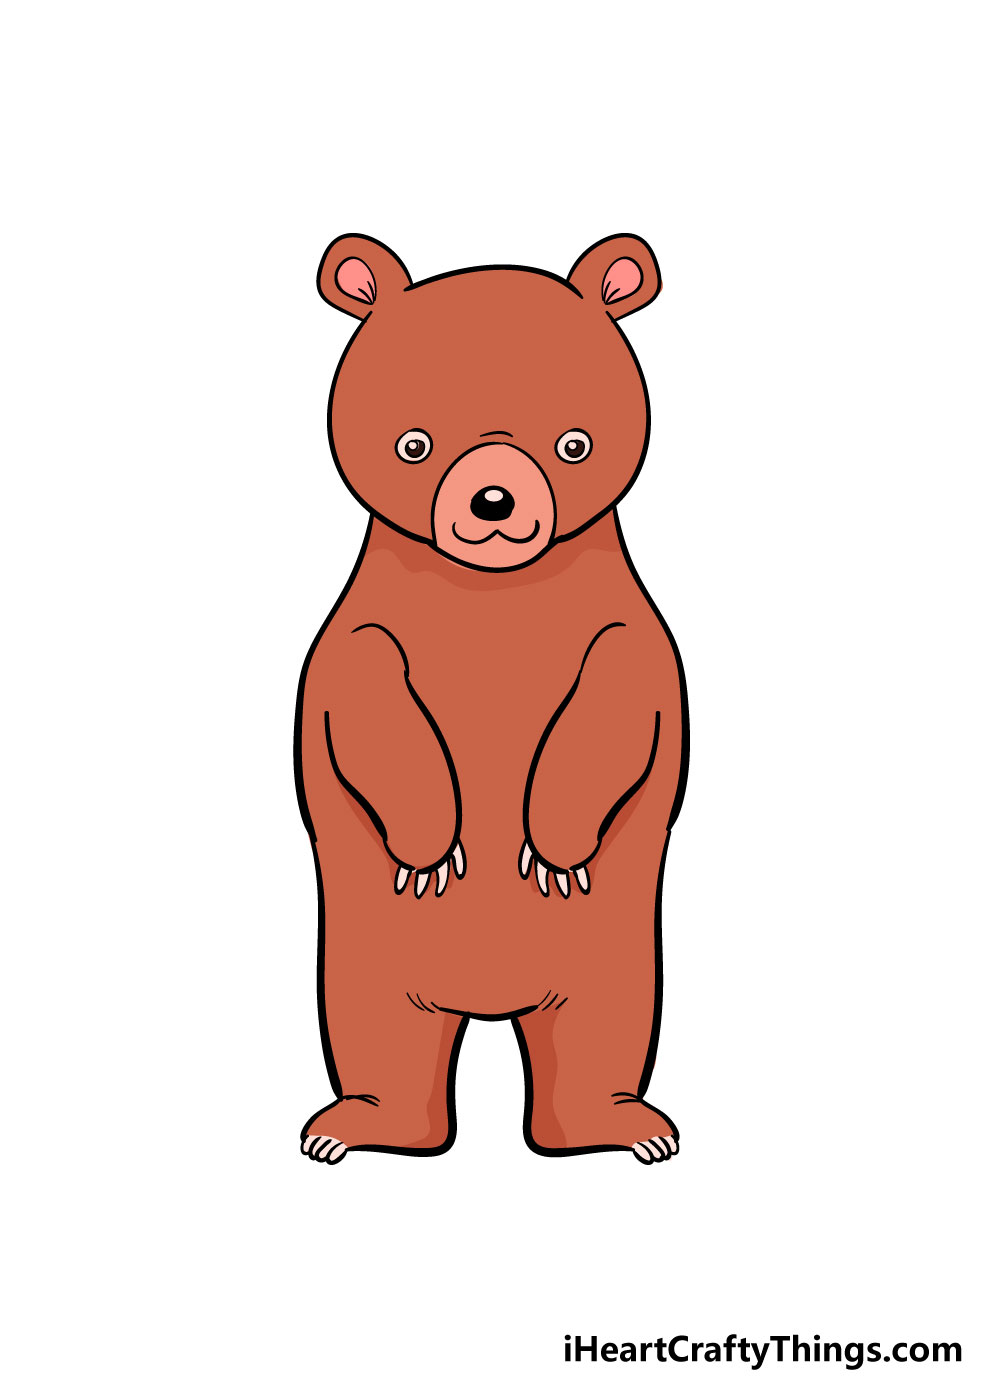 How to draw bear 8 - Cách vẽ con gấu dễ thương đơn giản với 8 bước